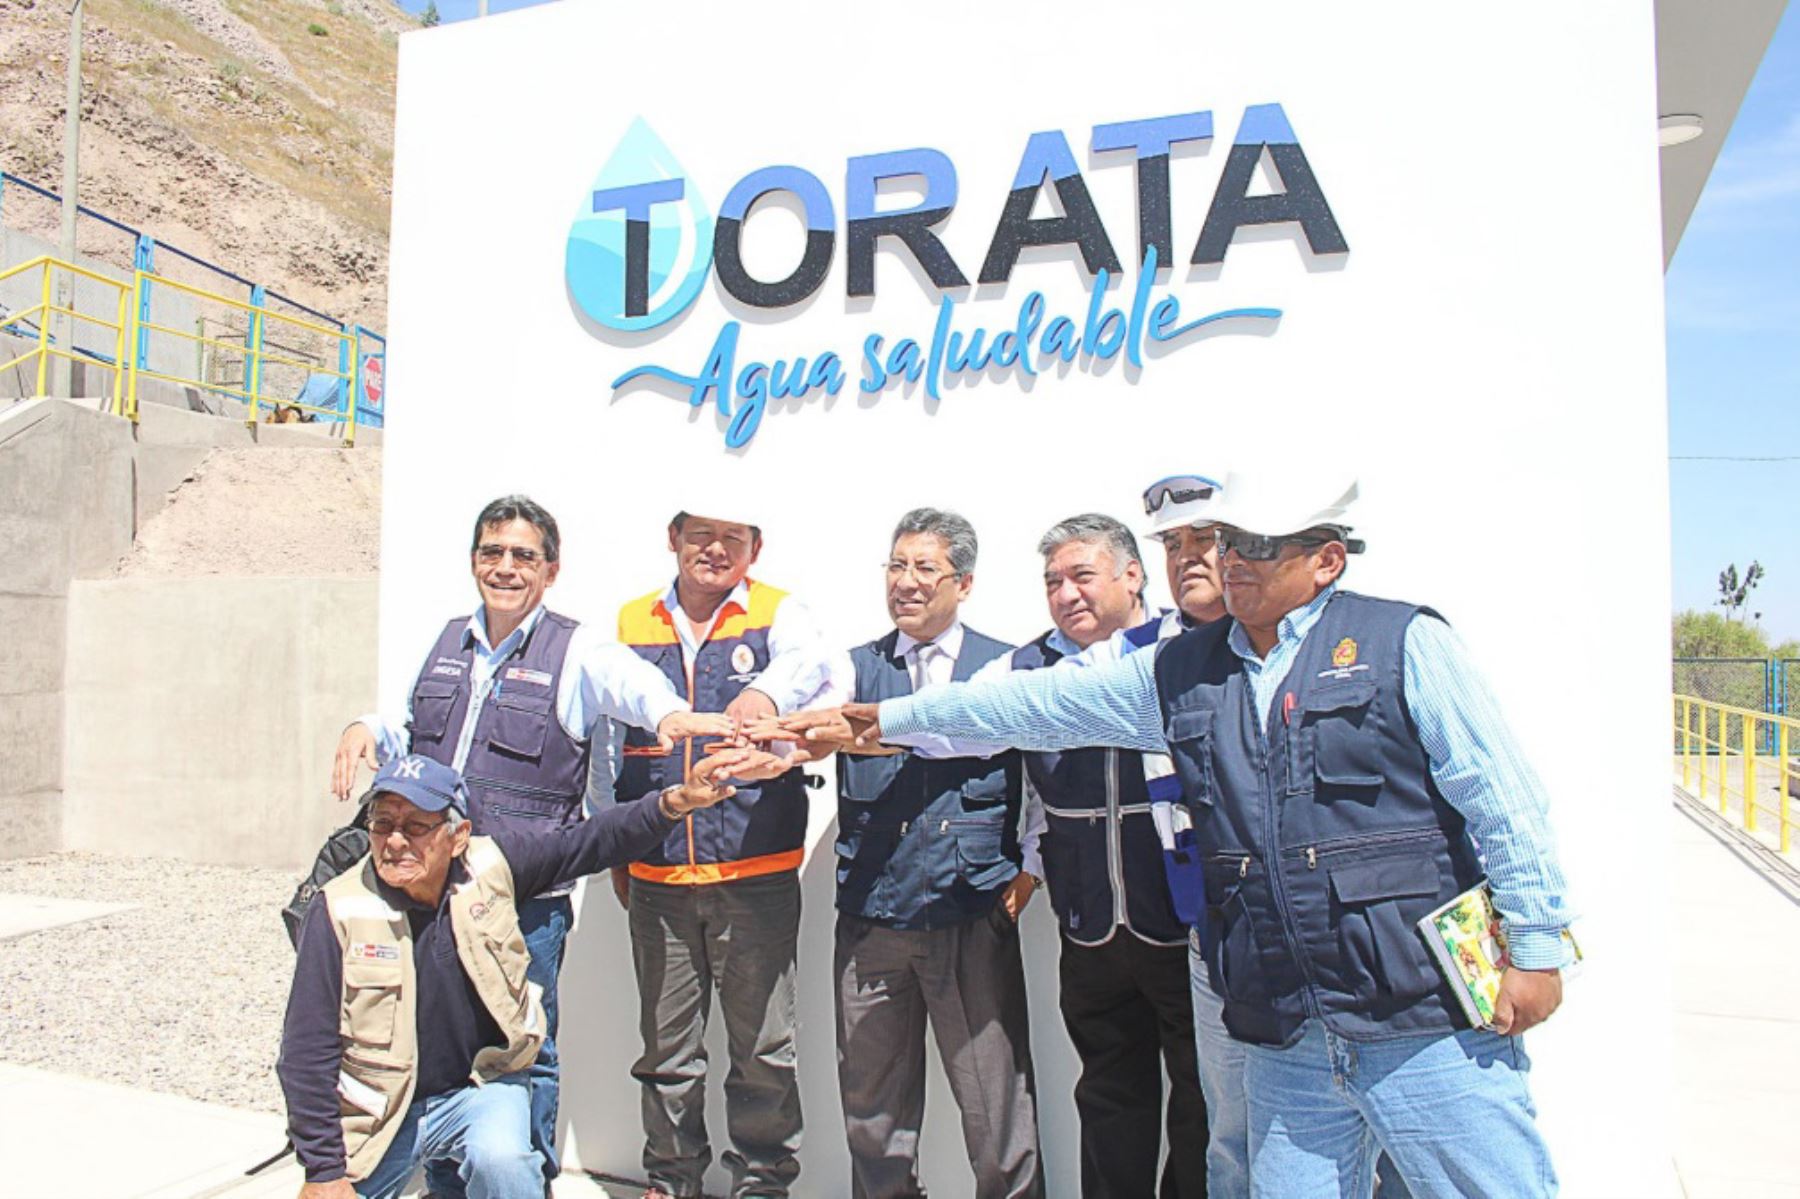 Los pobladores de Torata y Yacango, localidades de la provincia de Mariscal Nieto, en la región Moquegua, pueden consumir desde ahora agua de calidad y con ello reducir significativamente la exposición a metales pesados, específicamente arsénico y cadmio.